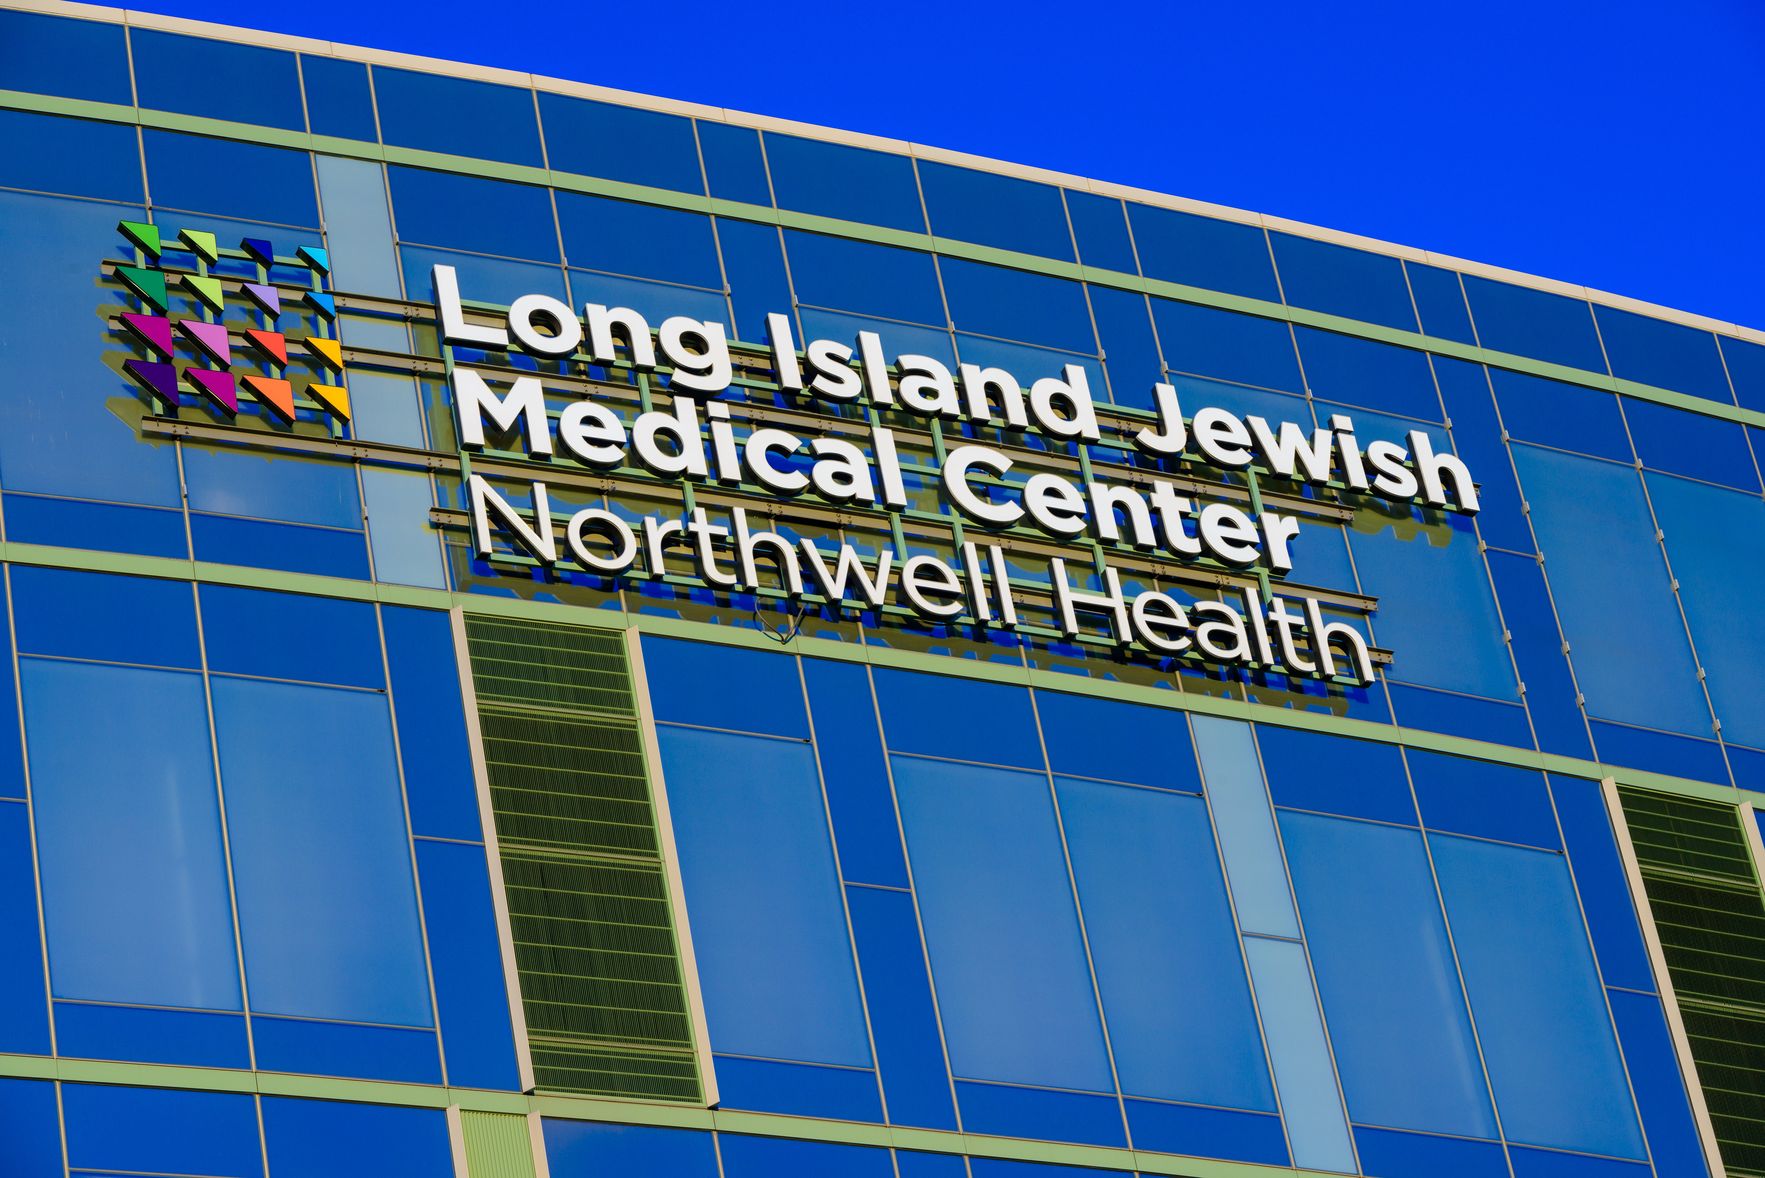 Northwell Health Named Presenting Partner for New York Rangers